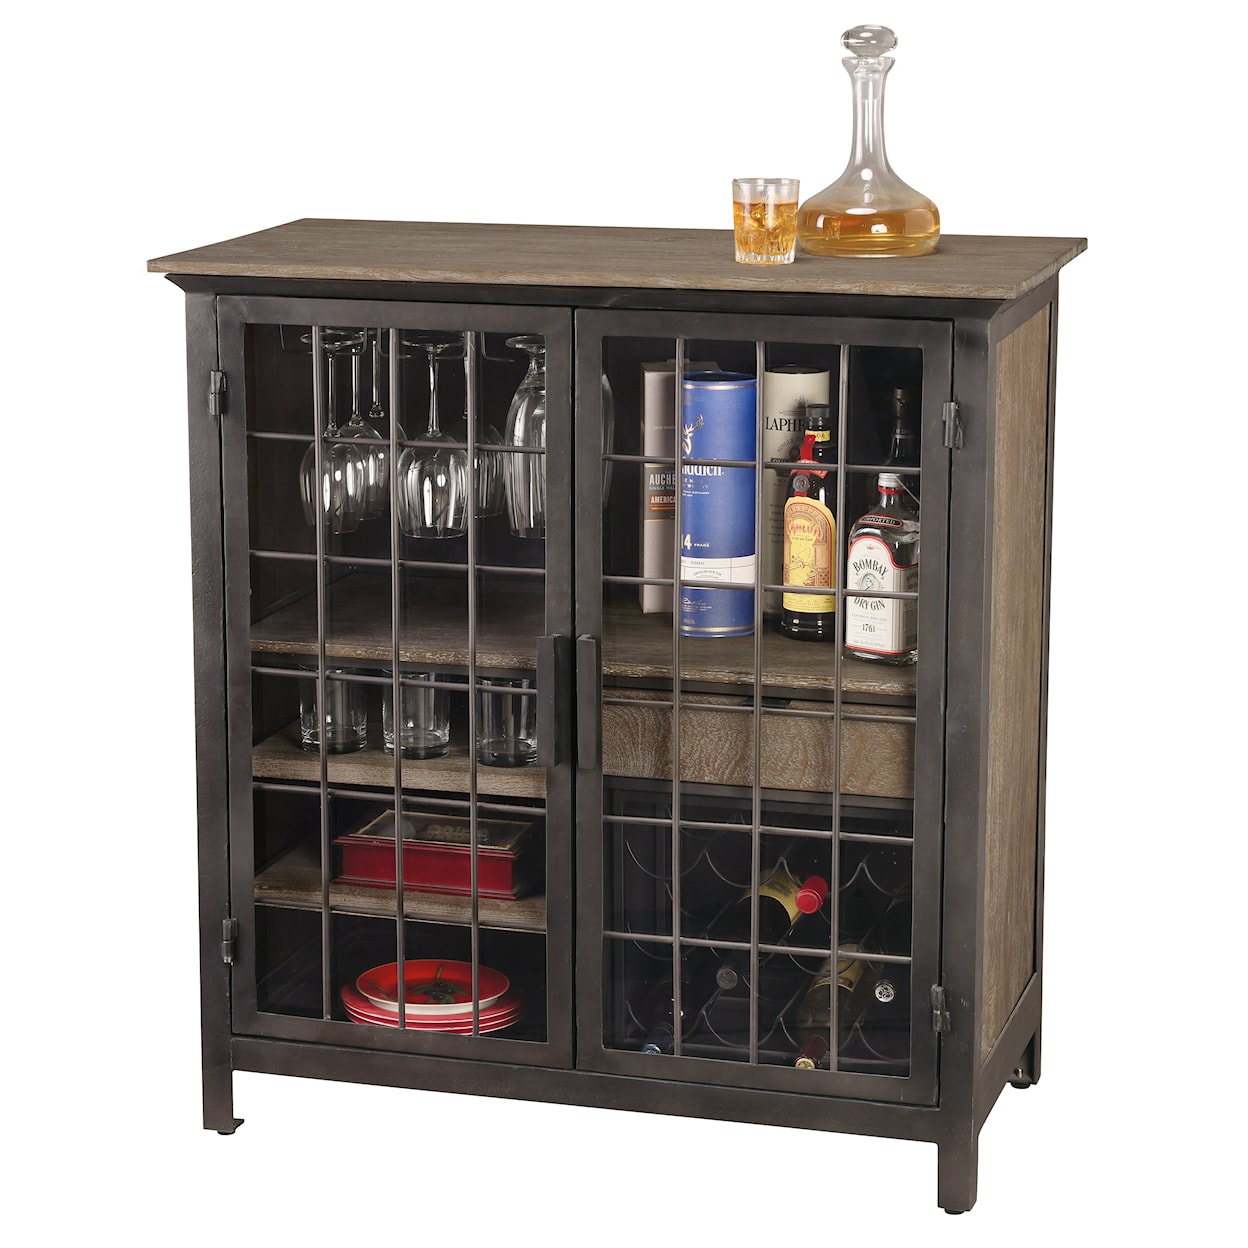 Howard Miller Howard Miller Andie Wine & Bar Cabinet